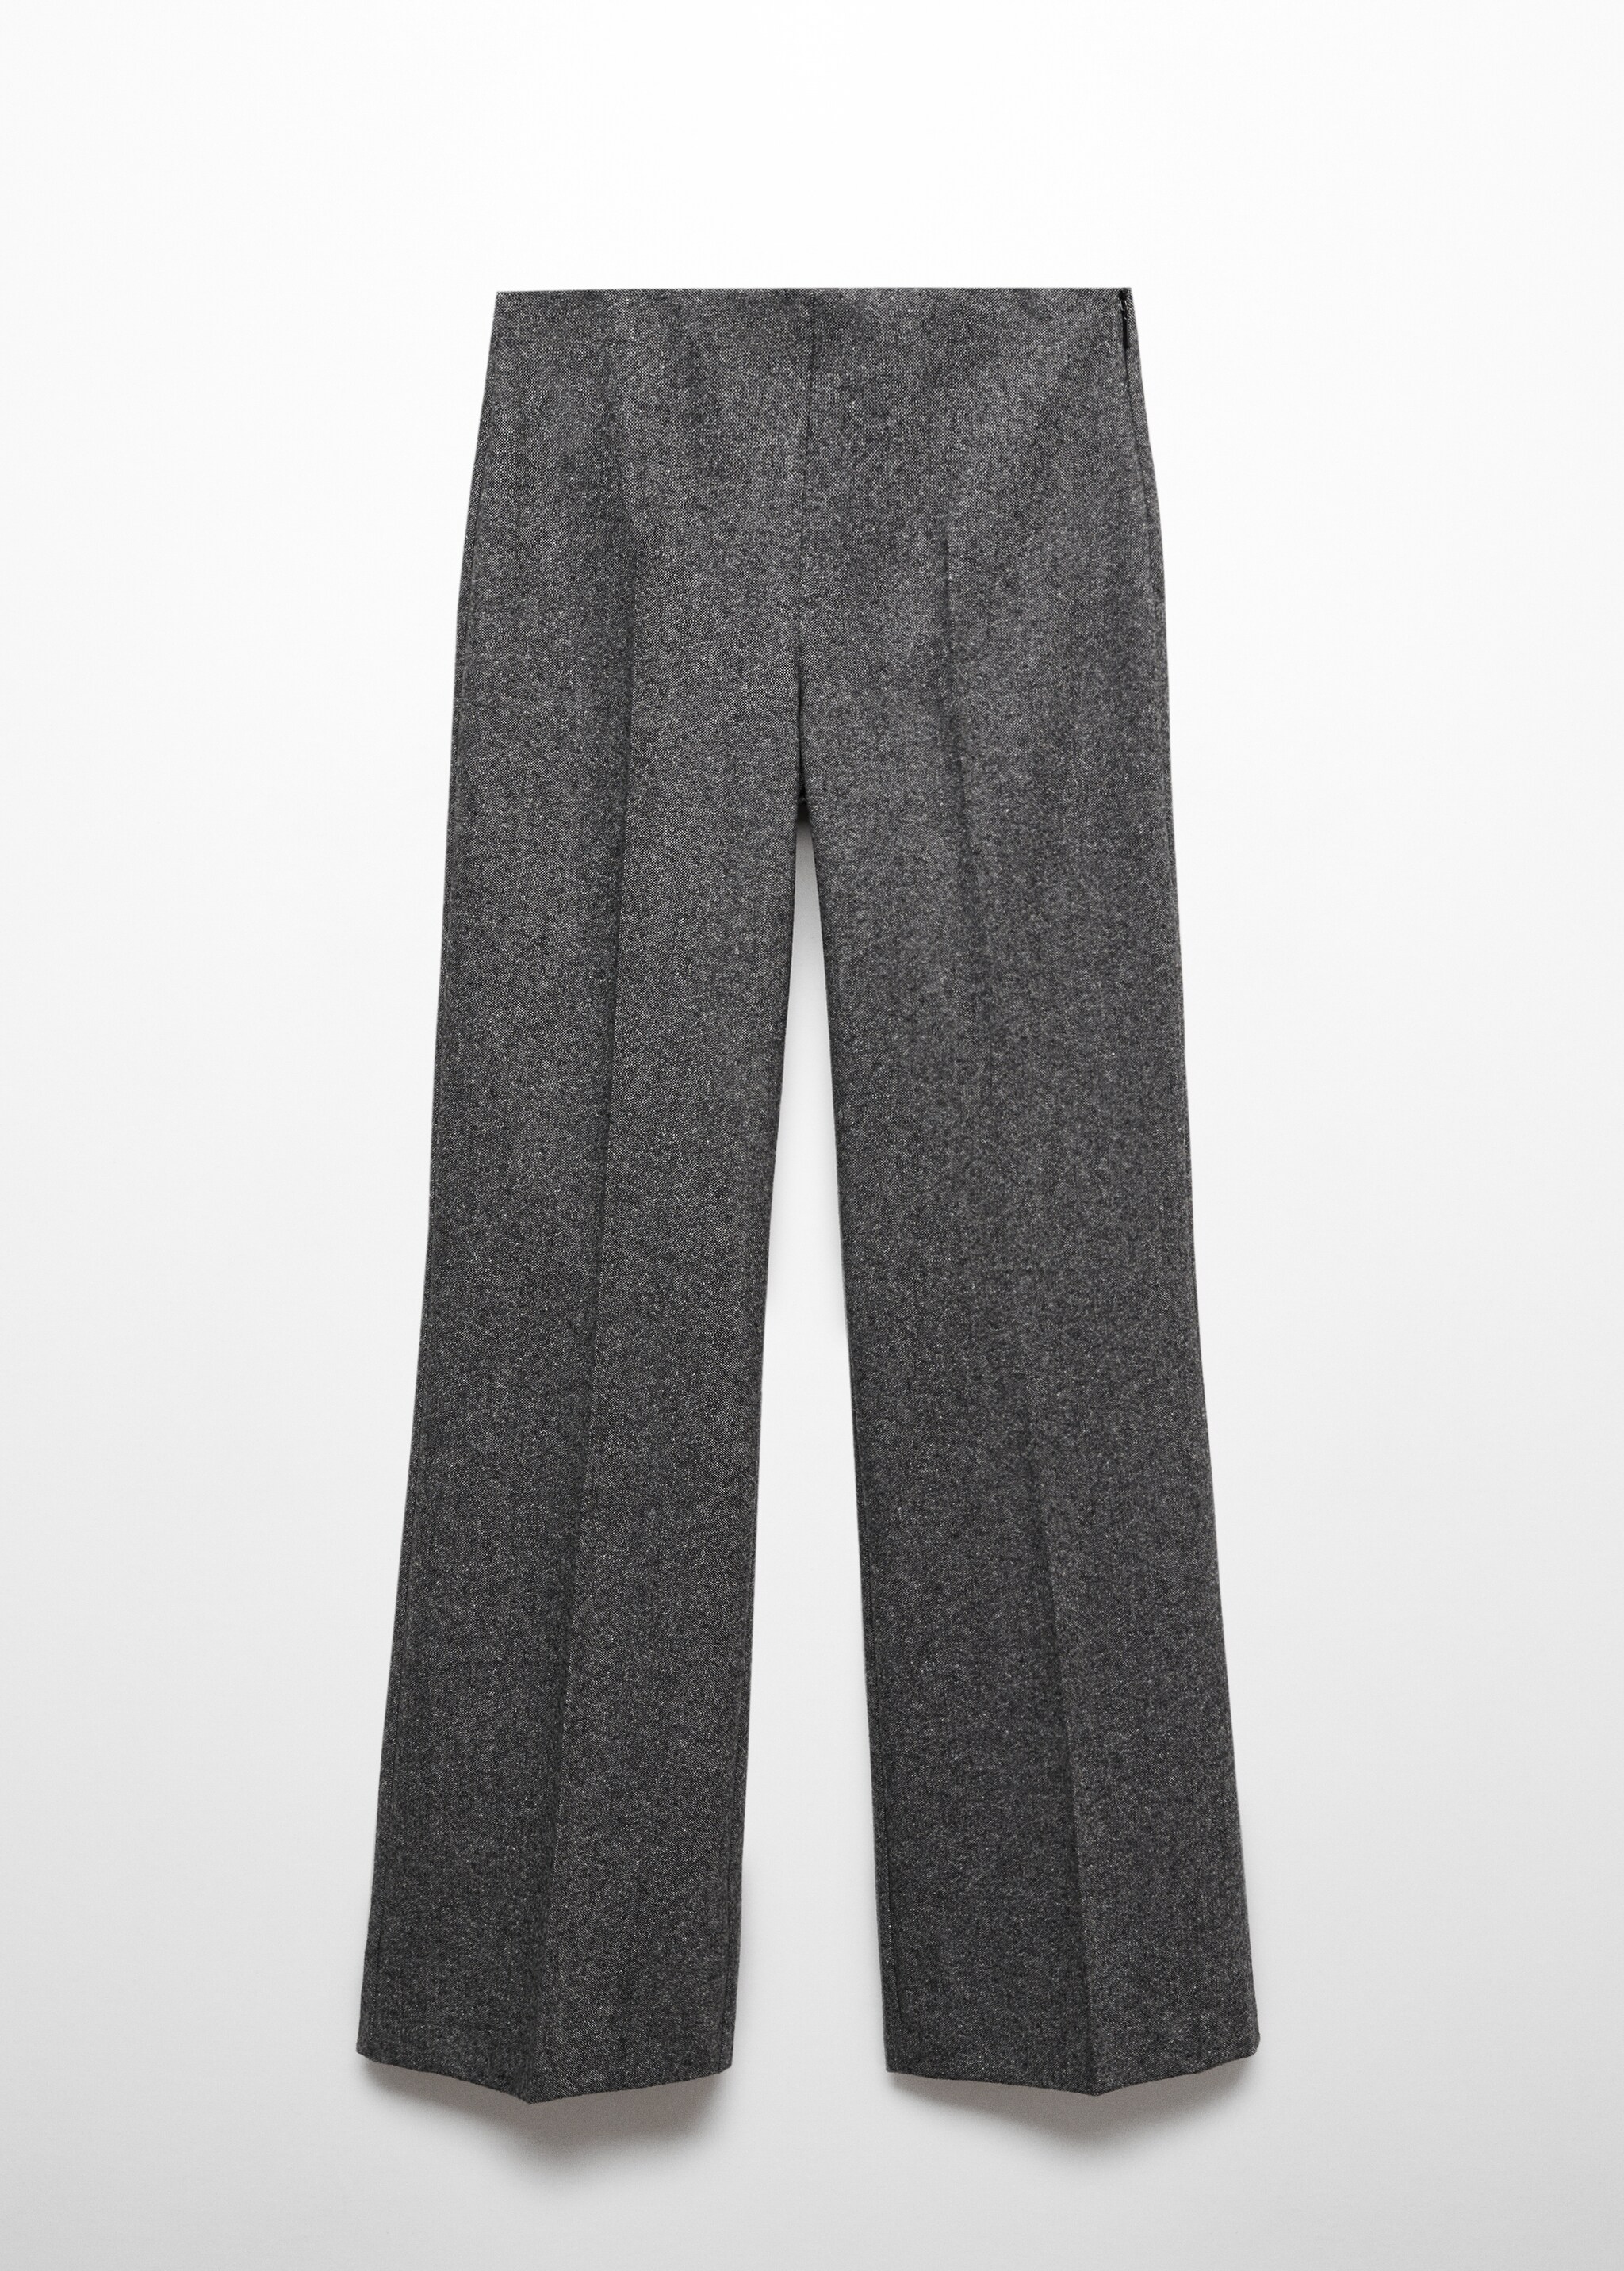 Pantaloni completo lana - Articolo senza modello